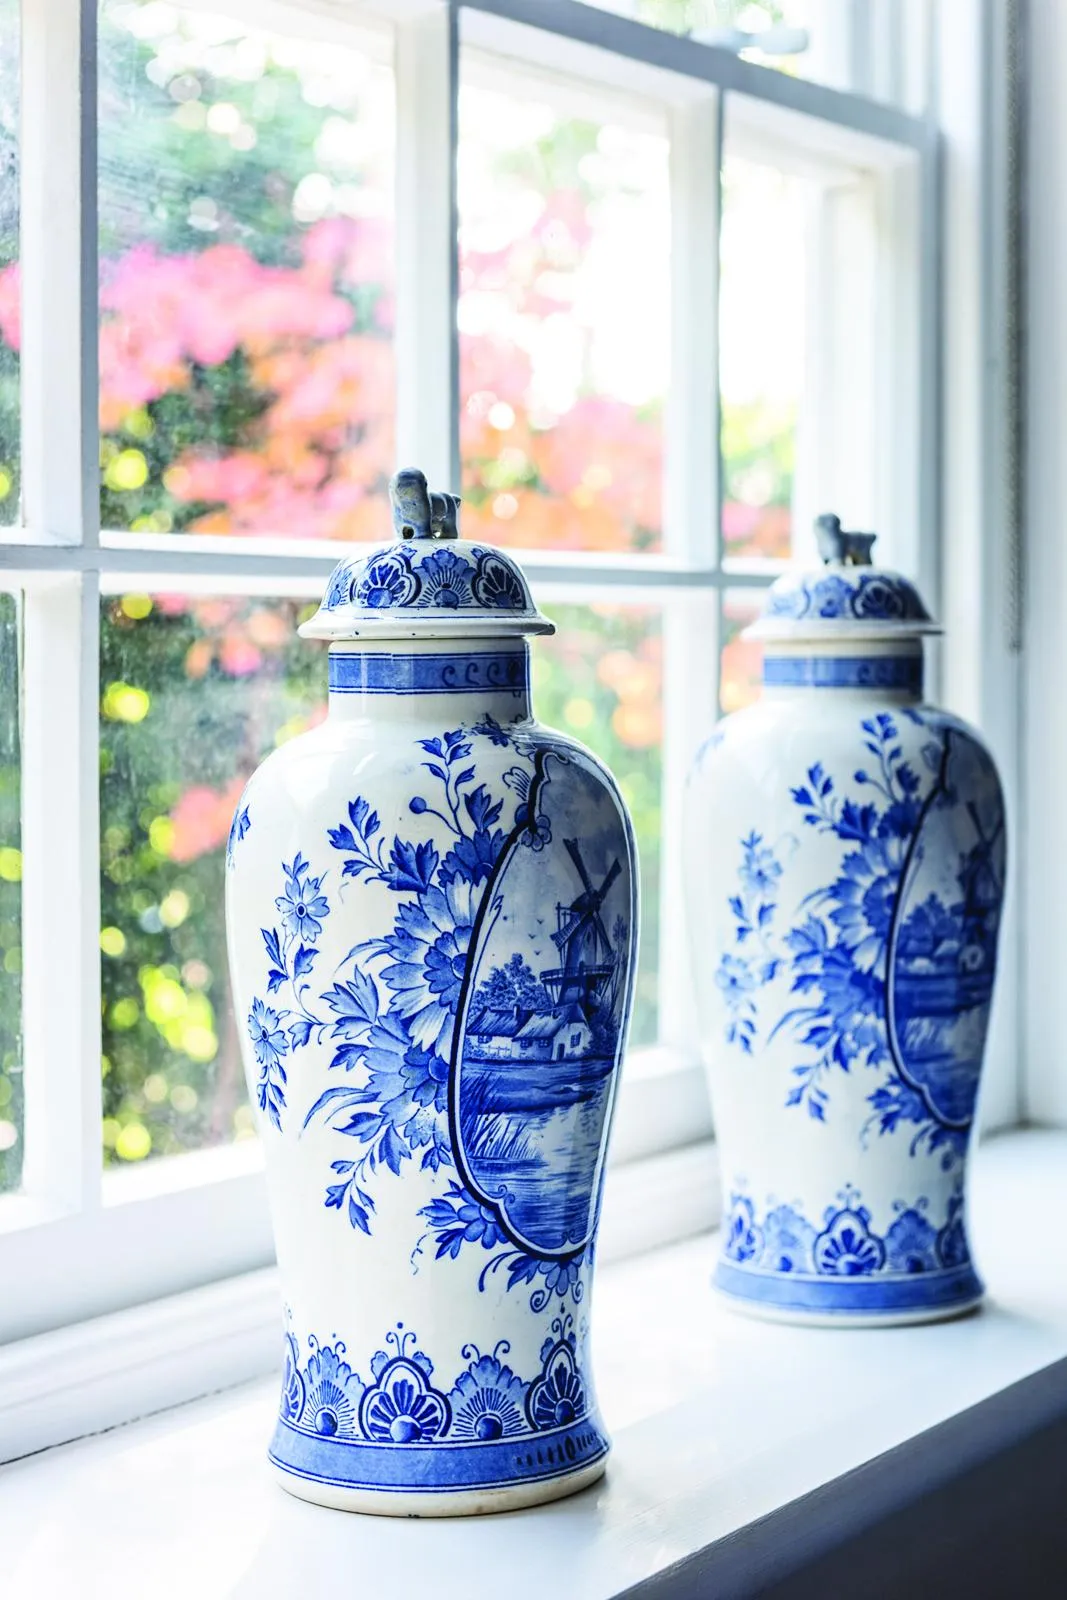 18th-century home Delftware jars